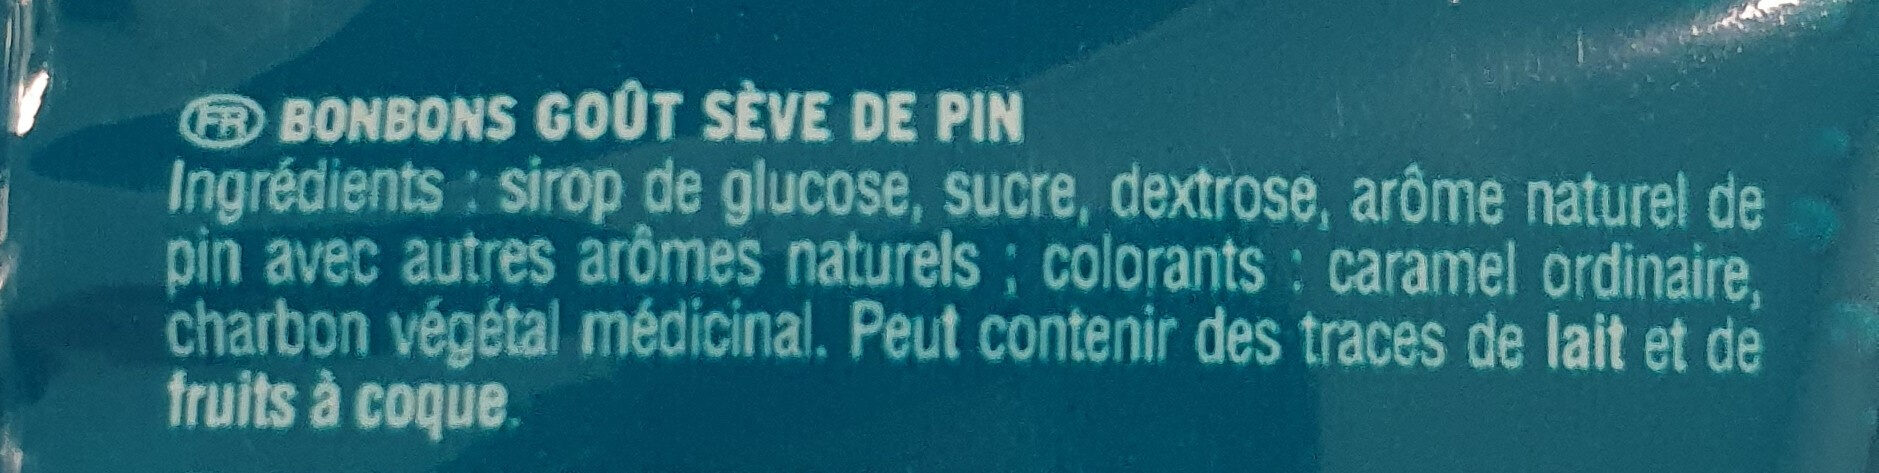 Croibleu Sève de Pin - Ingredientes - fr